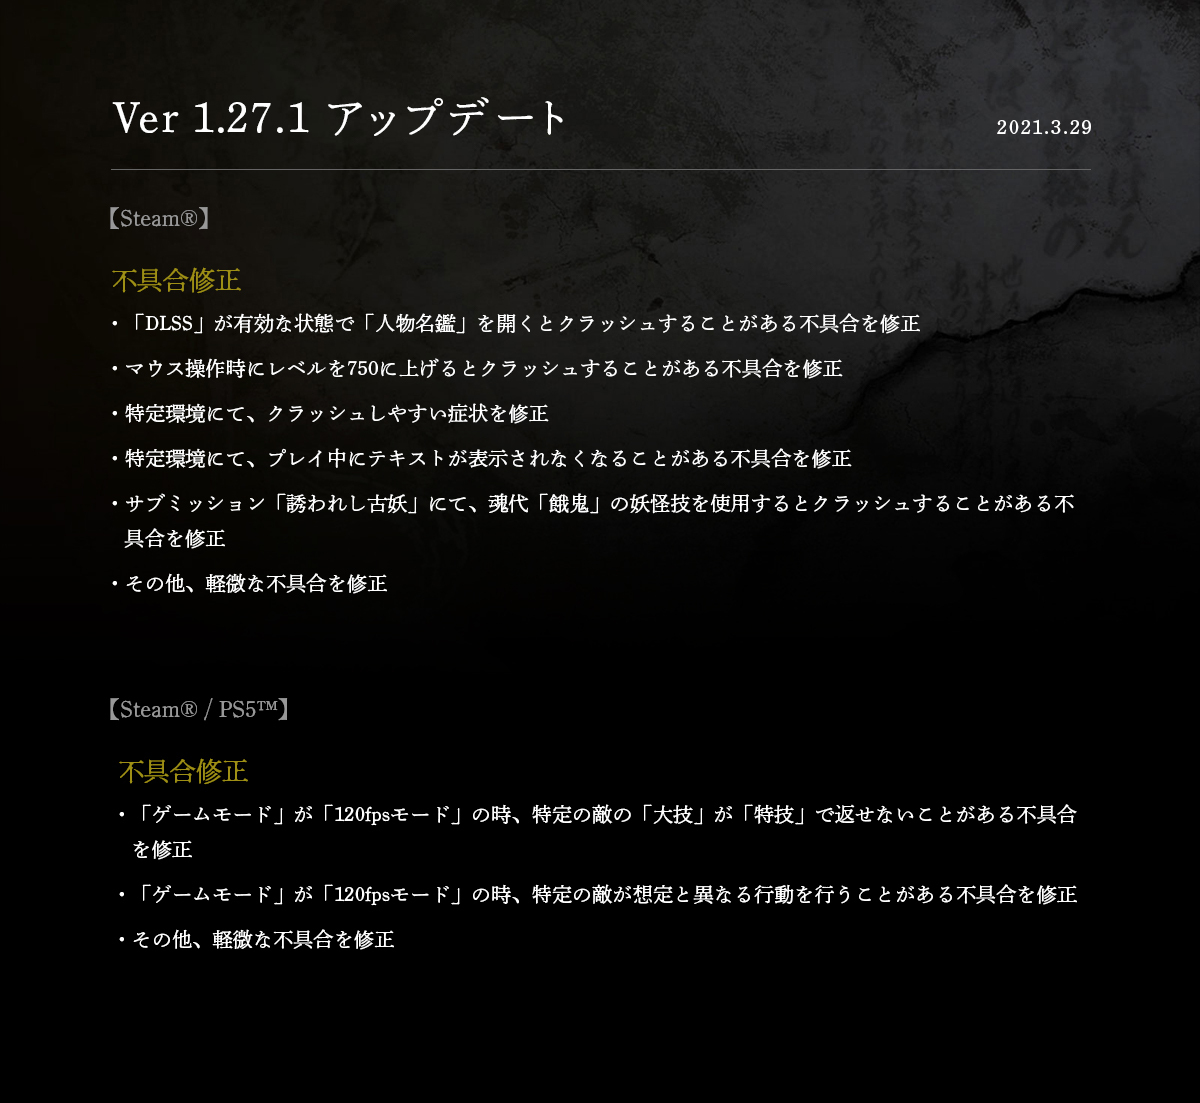 《仁王2》最新補丁上線 主要修複Steam/PS5版各種BUG